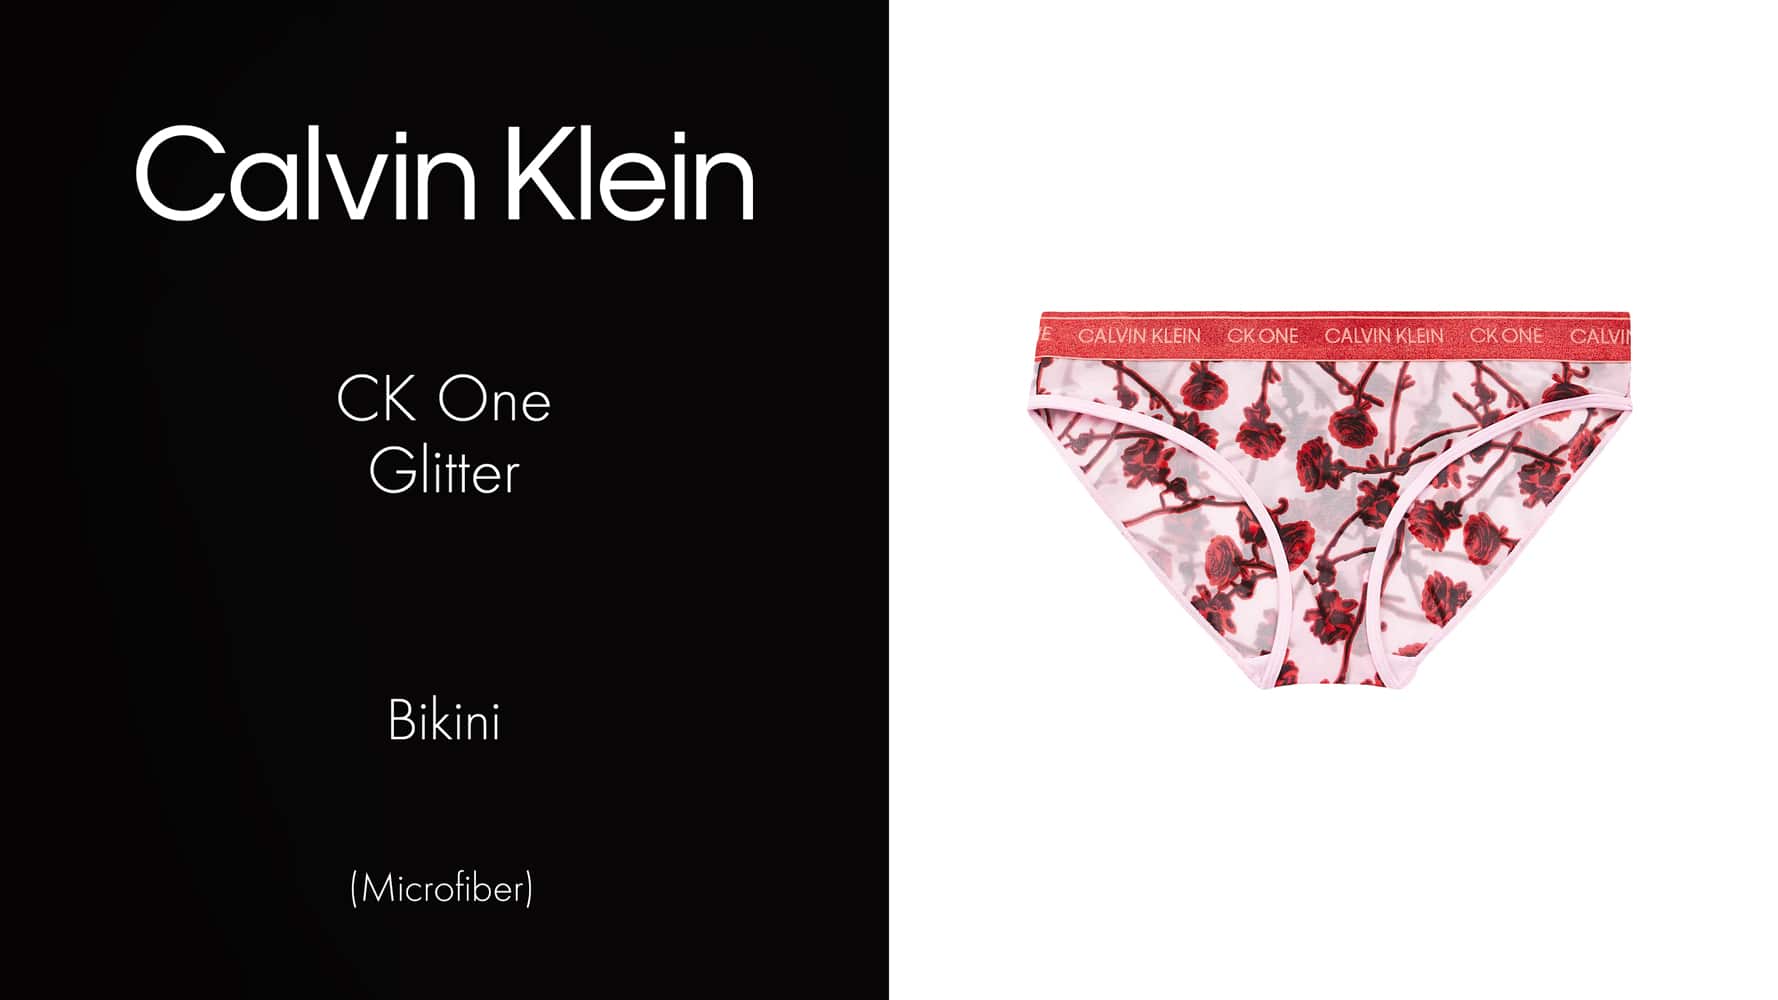 Bikini - CK One Glitter